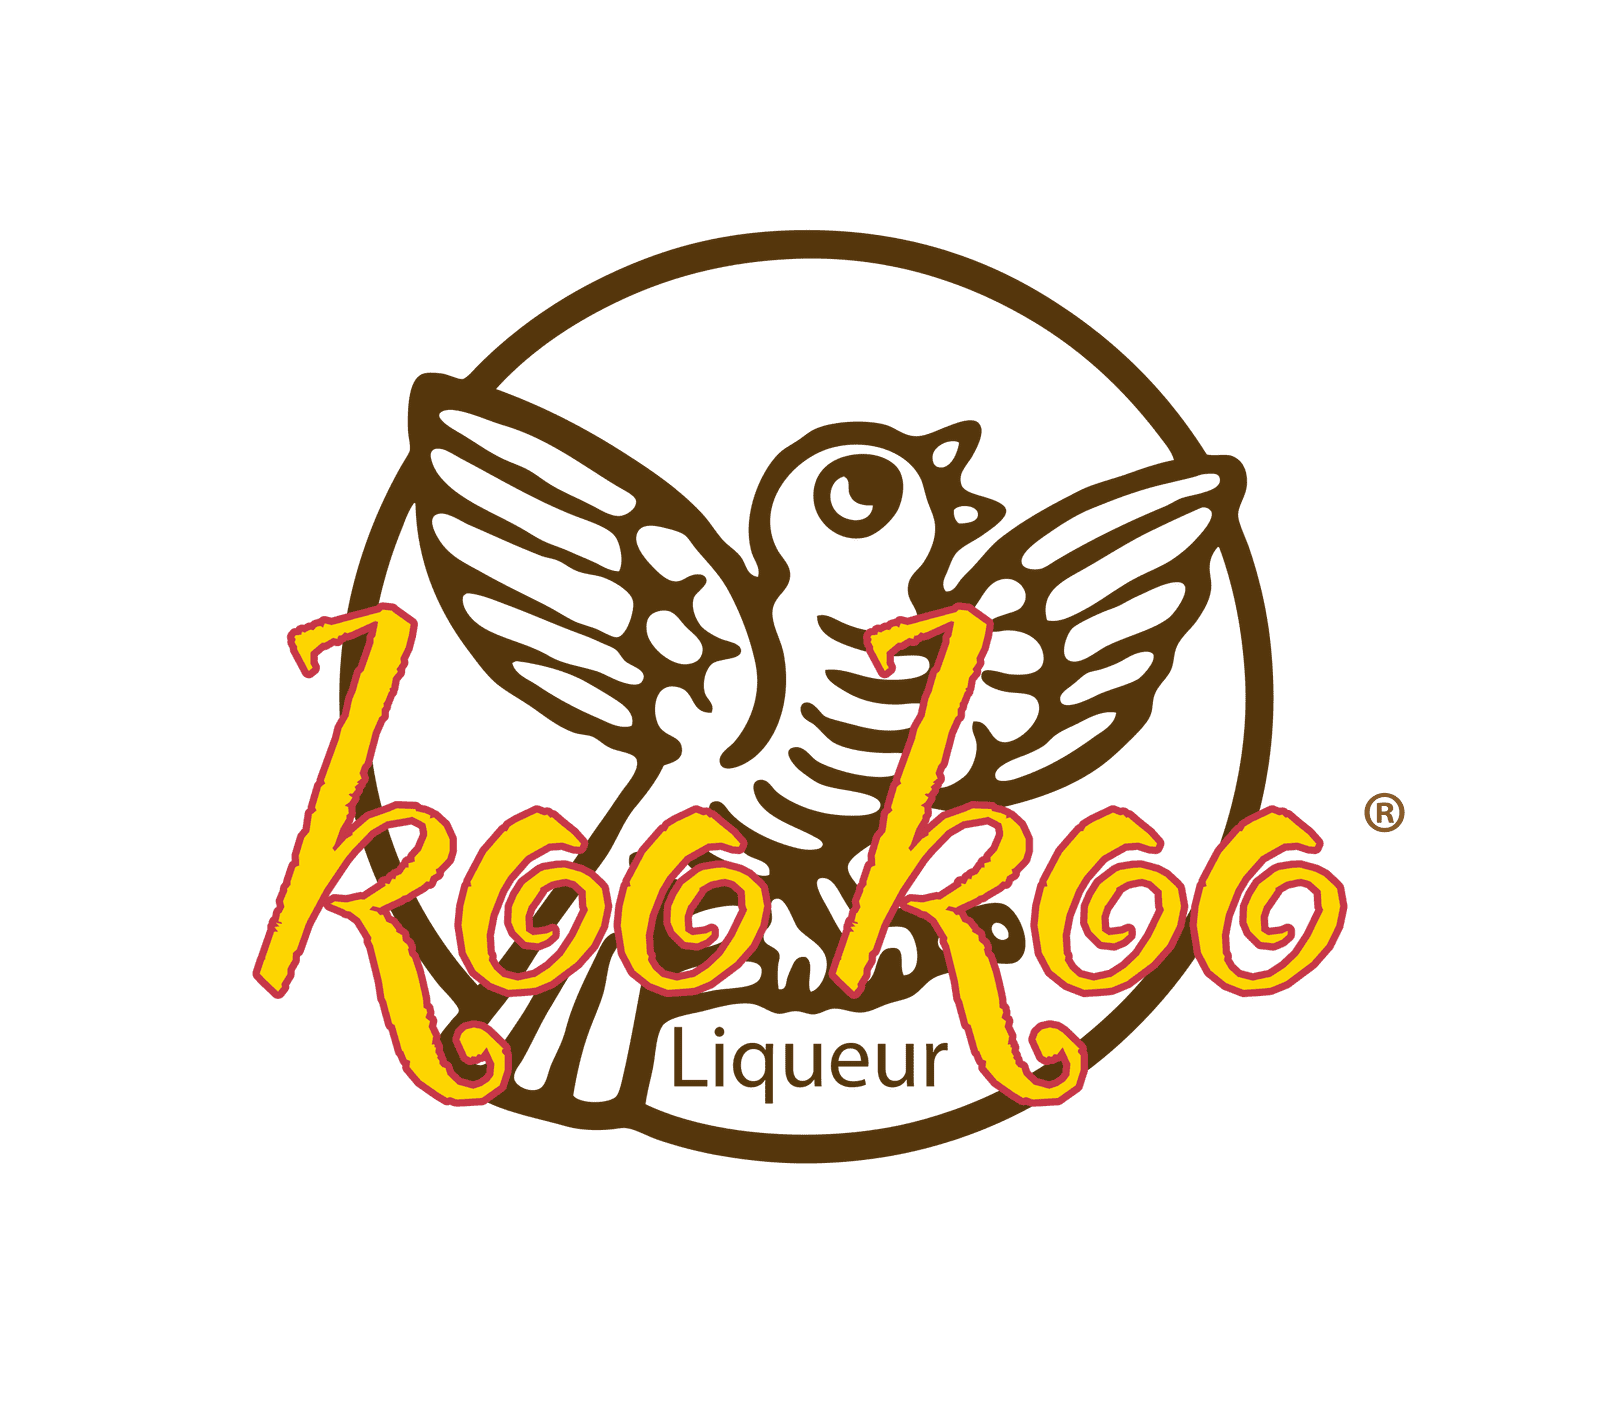 Koo Koo